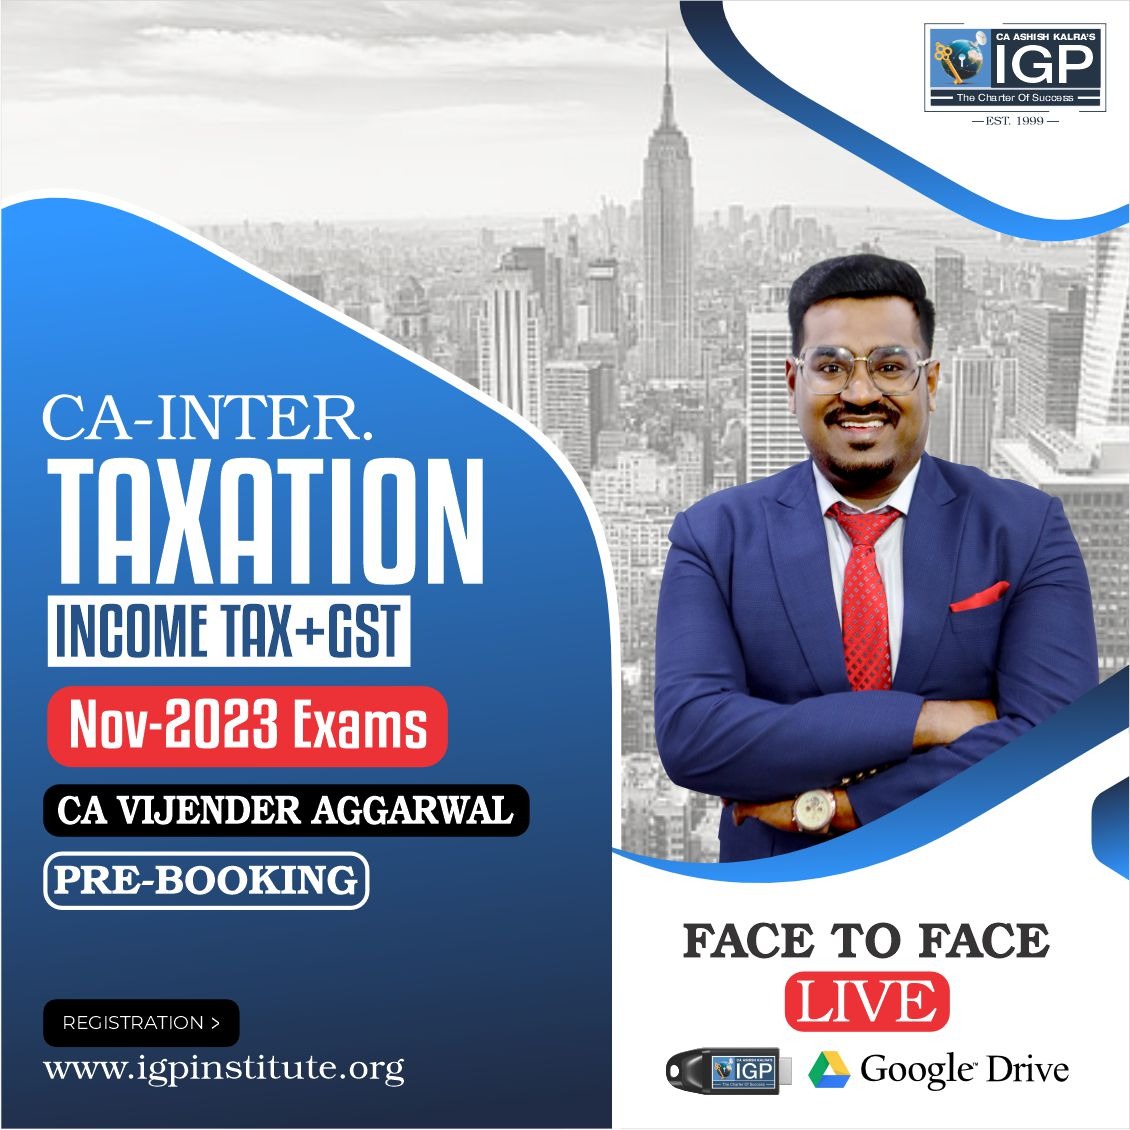 CA Inter - Taxation (Income Tax + GST) Nov 23 Exam Pre-booking -CA-INTER-Taxation (Income Tax + GST)- CA Vijender Aggarwal